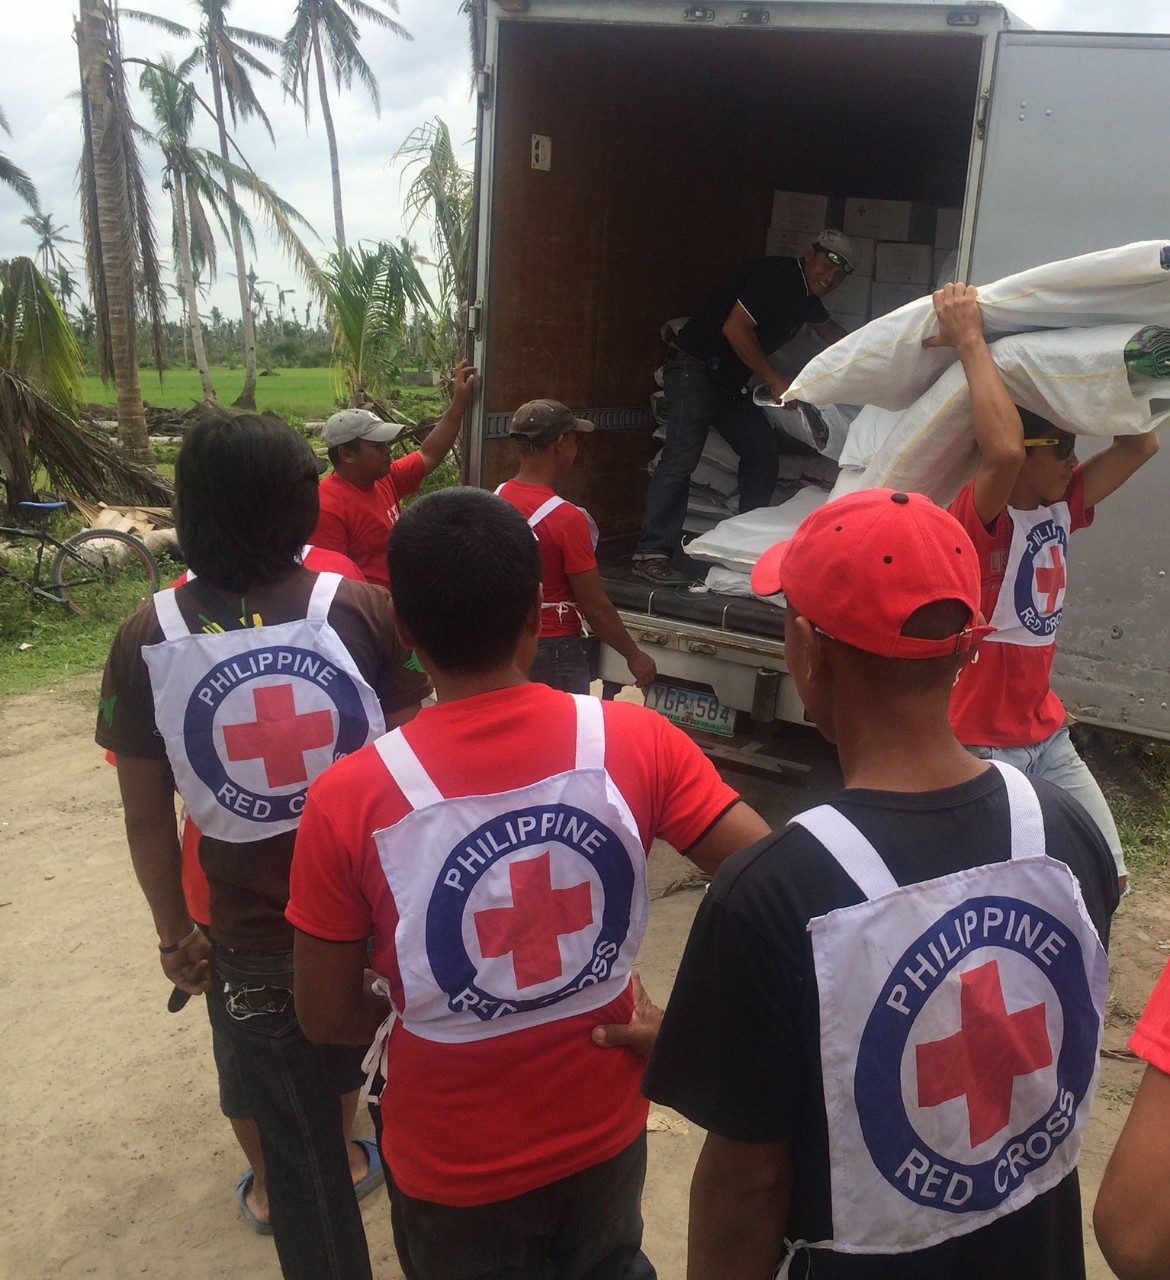 philippine red cross volunteers unloading truck